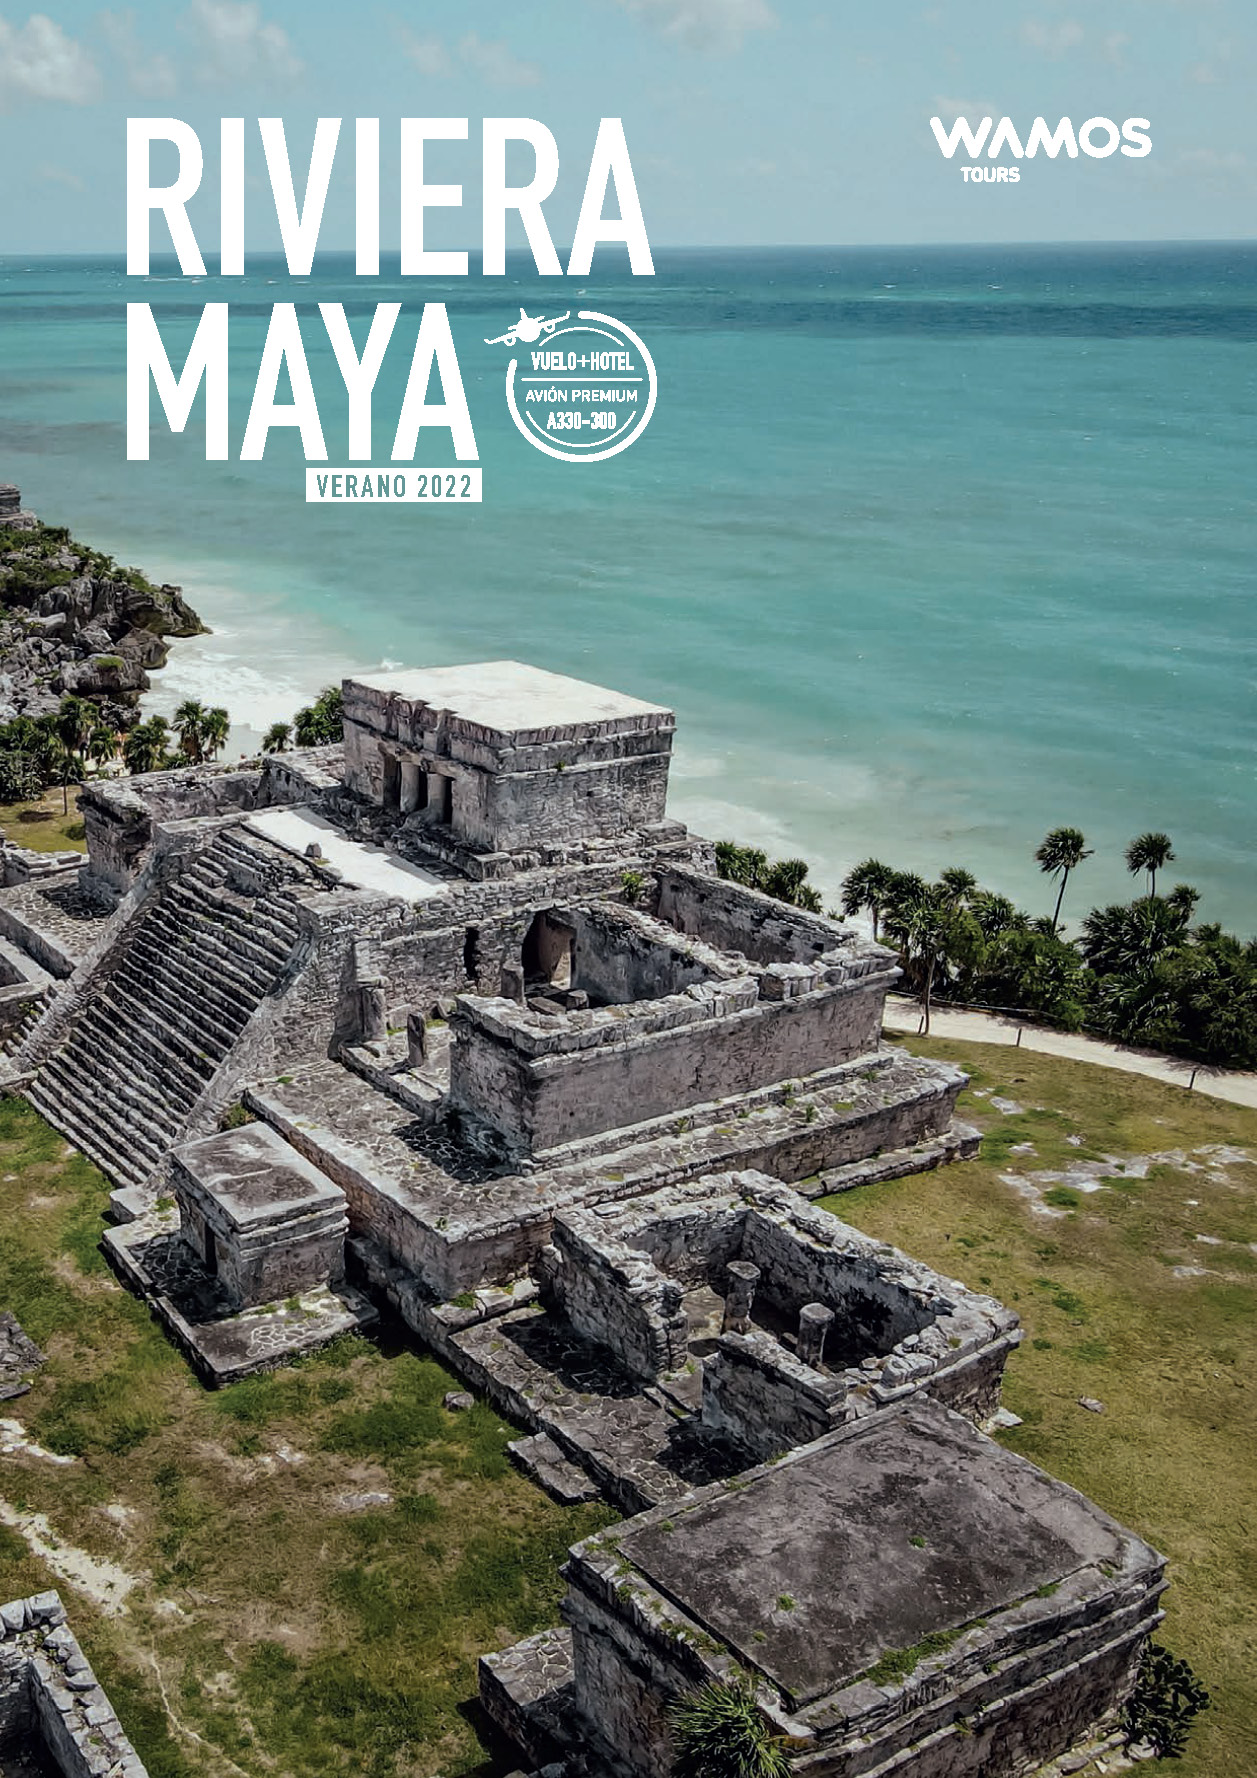 Catalogo Wamos Tours Riviera Maya Verano 2022